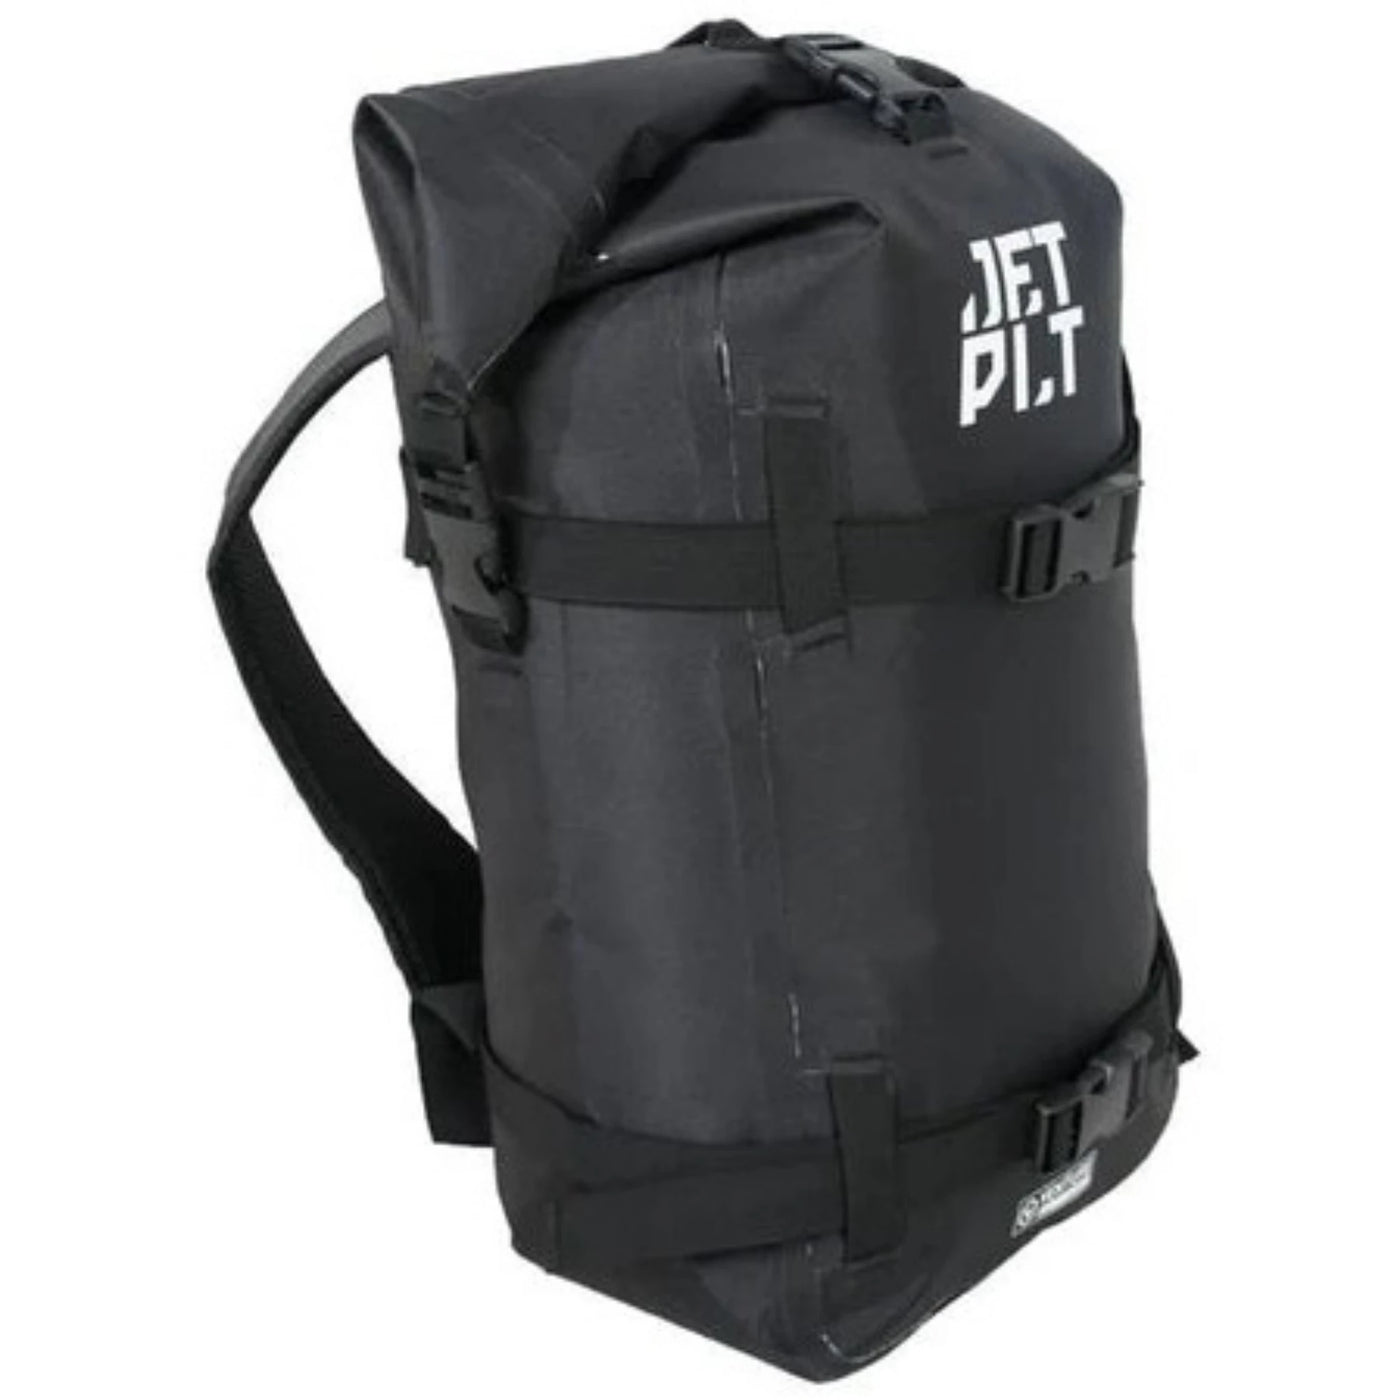 Jetpilot Venture 20L Drysafe Backpack